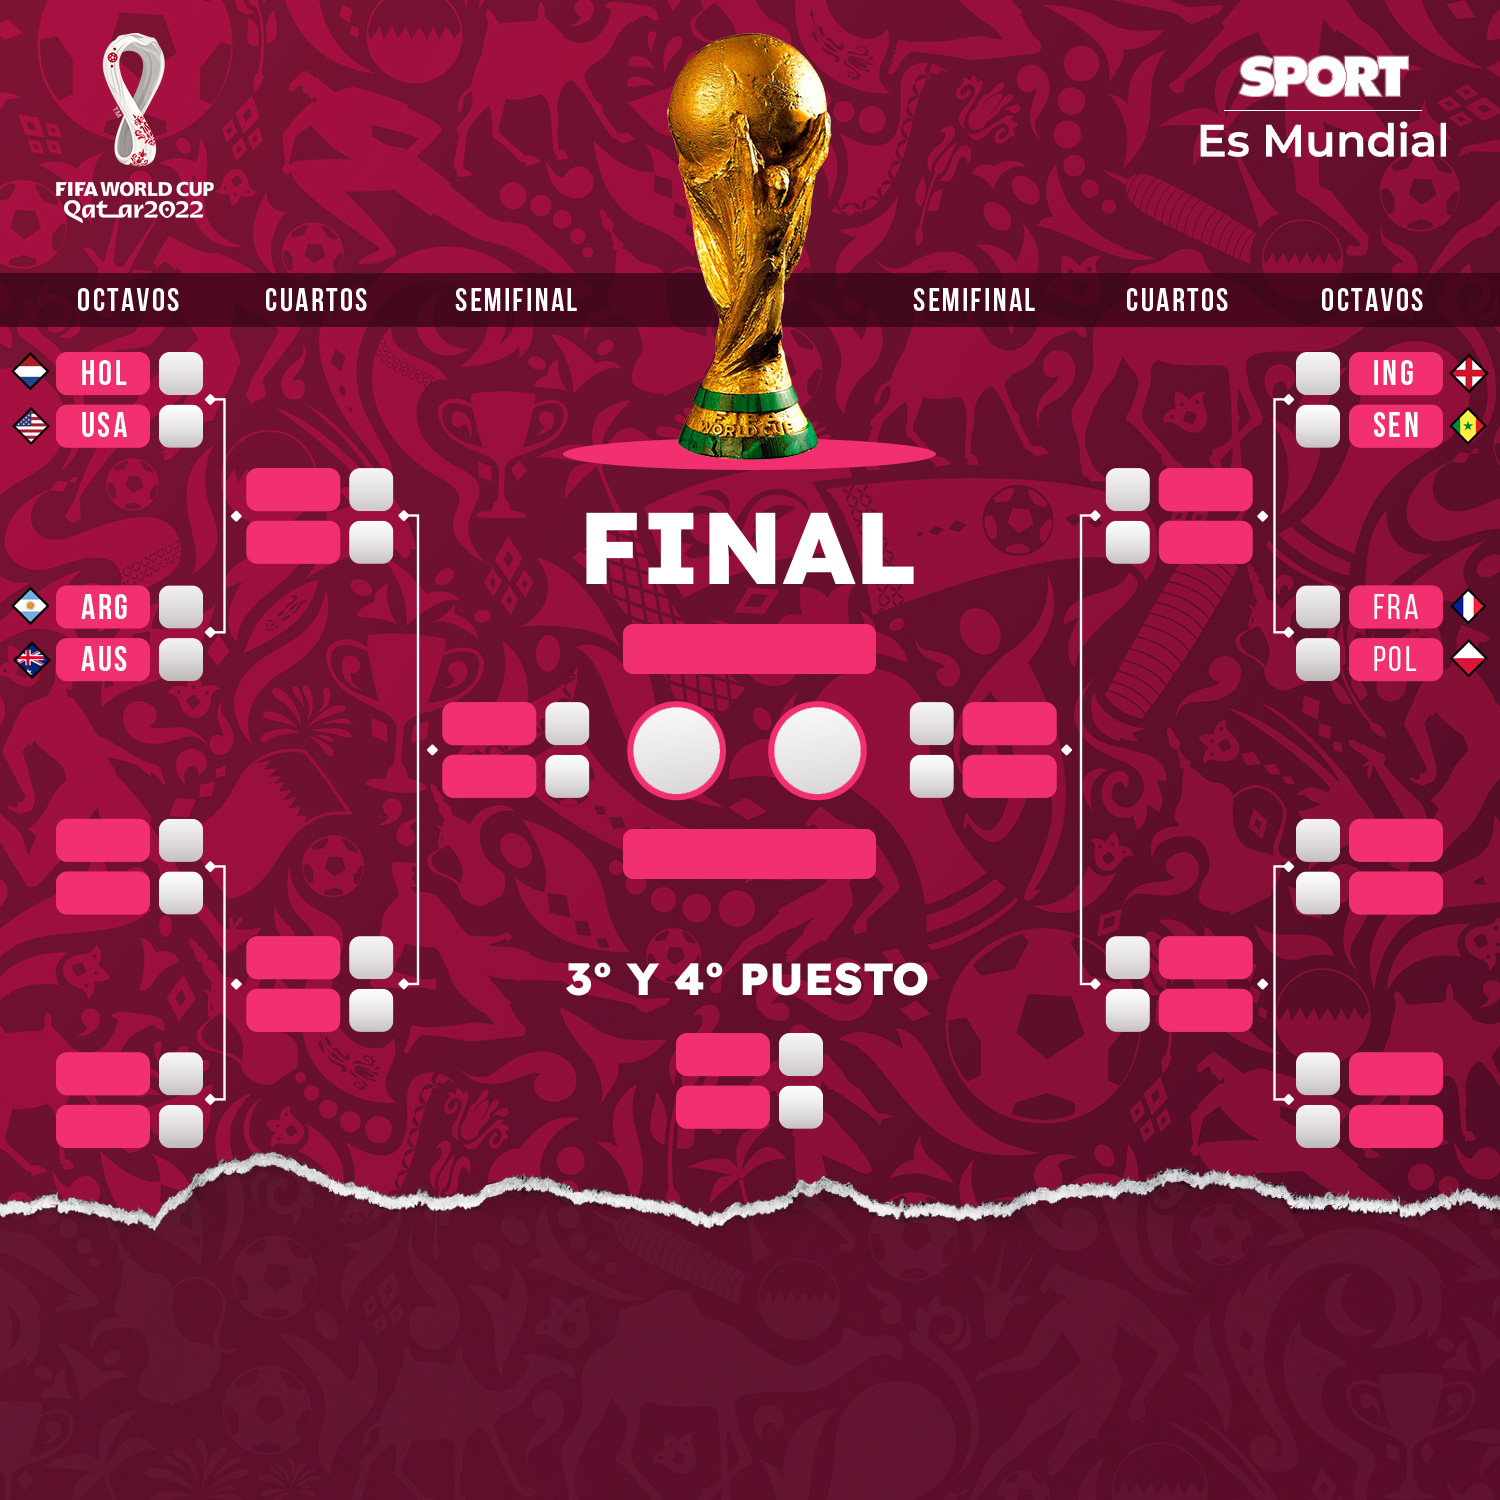 Así queda el cuadro de octavos de final del Mundial de Qatar 2022